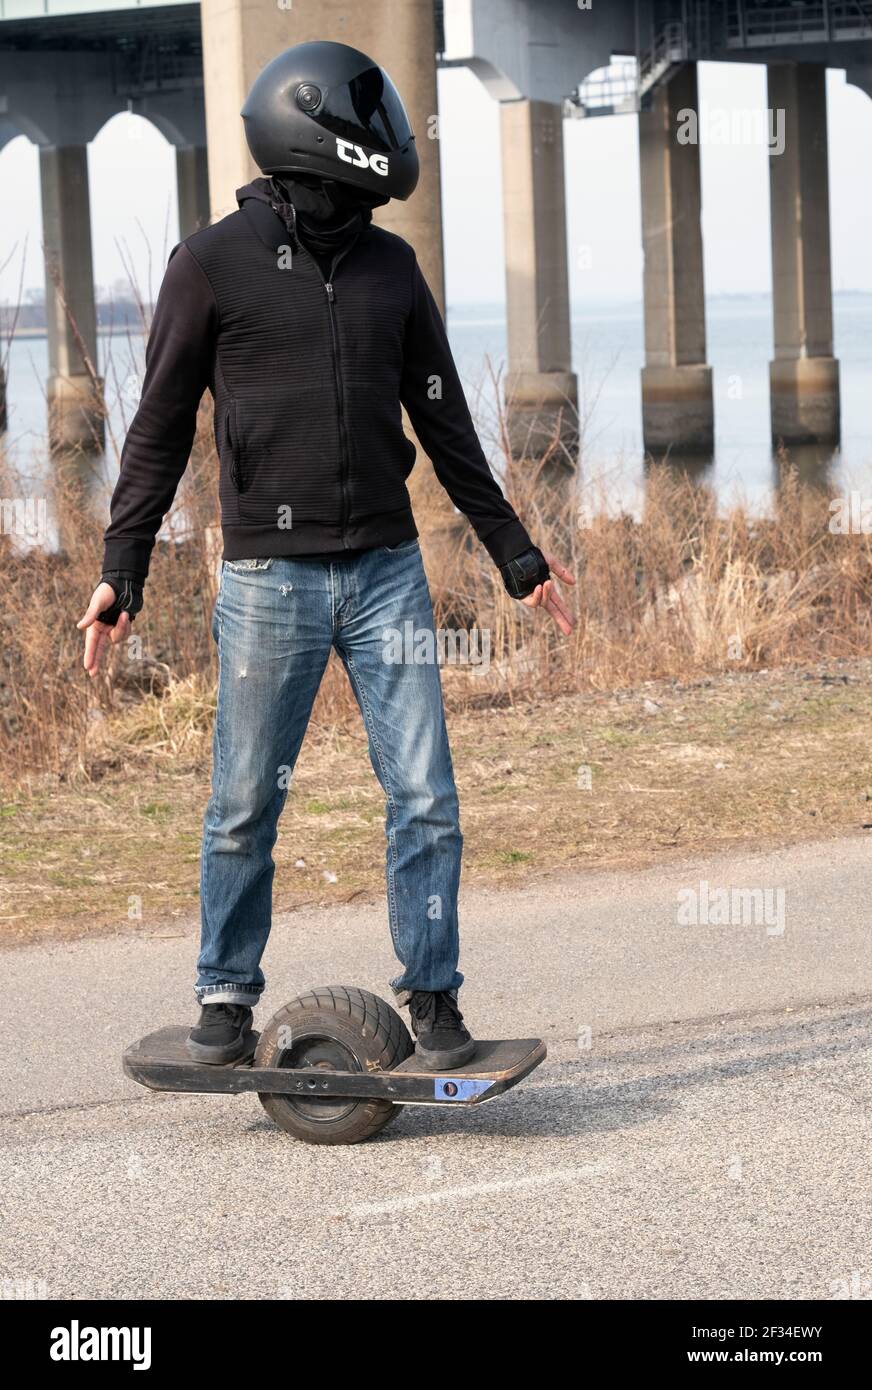 Ein junger Mann auf einem ONEWHEEL, einem selbstbalancierenden Einrad-Elektro-Board-Sport,  Freizeit-Personal-Transporter, beschrieben als ein elektrisches Skateboard  Stockfotografie - Alamy